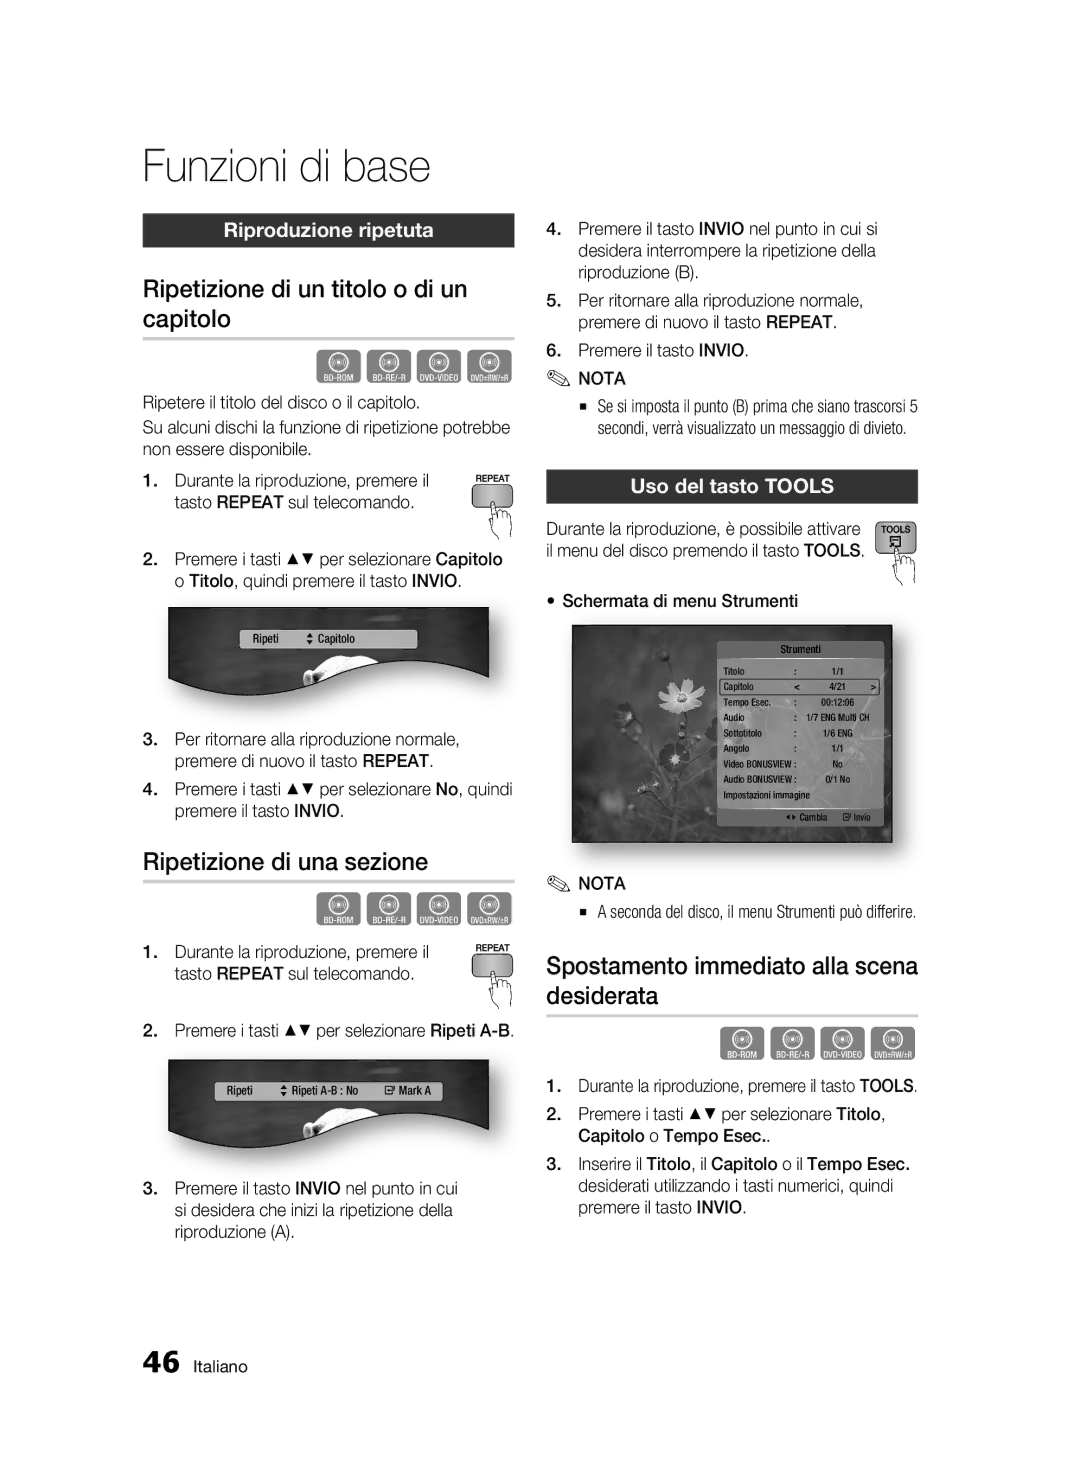 Samsung BD-C7500/XEF manual Ripetizione di un titolo o di un capitolo, Ripetizione di una sezione, Riproduzione ripetuta 